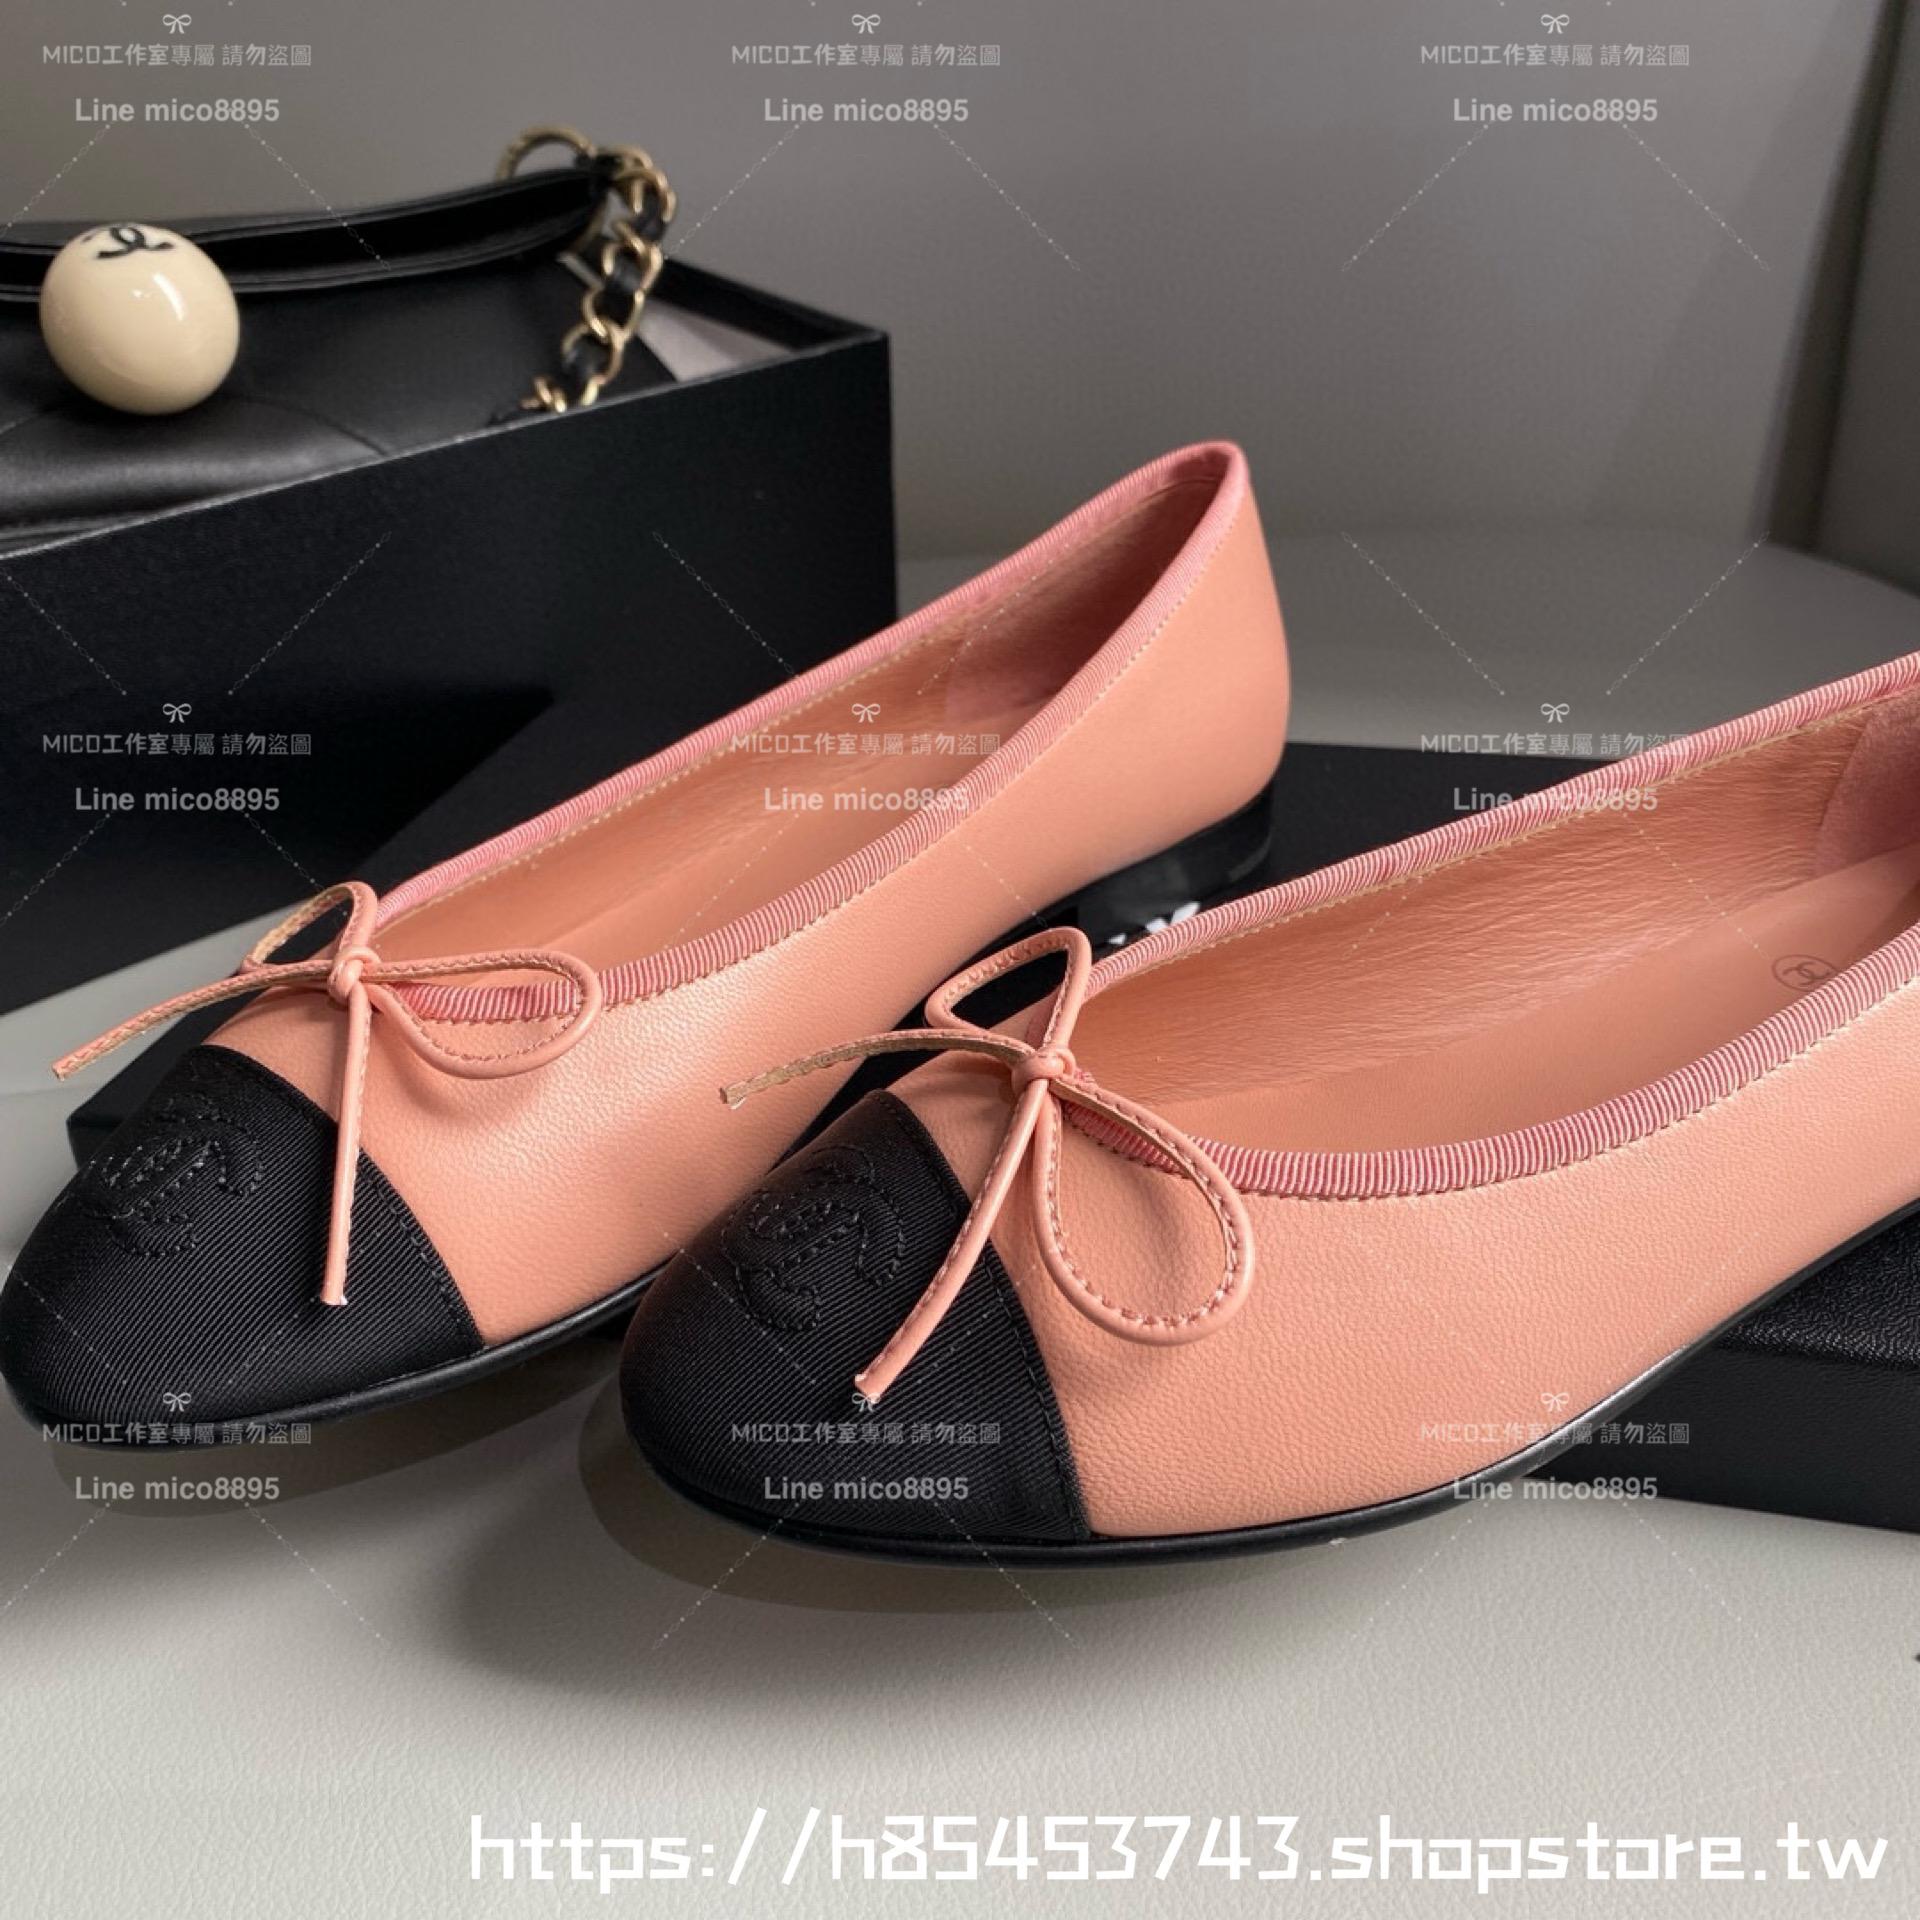 CHANEL 小香 經典款芭蕾舞鞋 桔粉色拼布 平底鞋/女鞋 Size：35-39（34.40.41.42定做不退换）